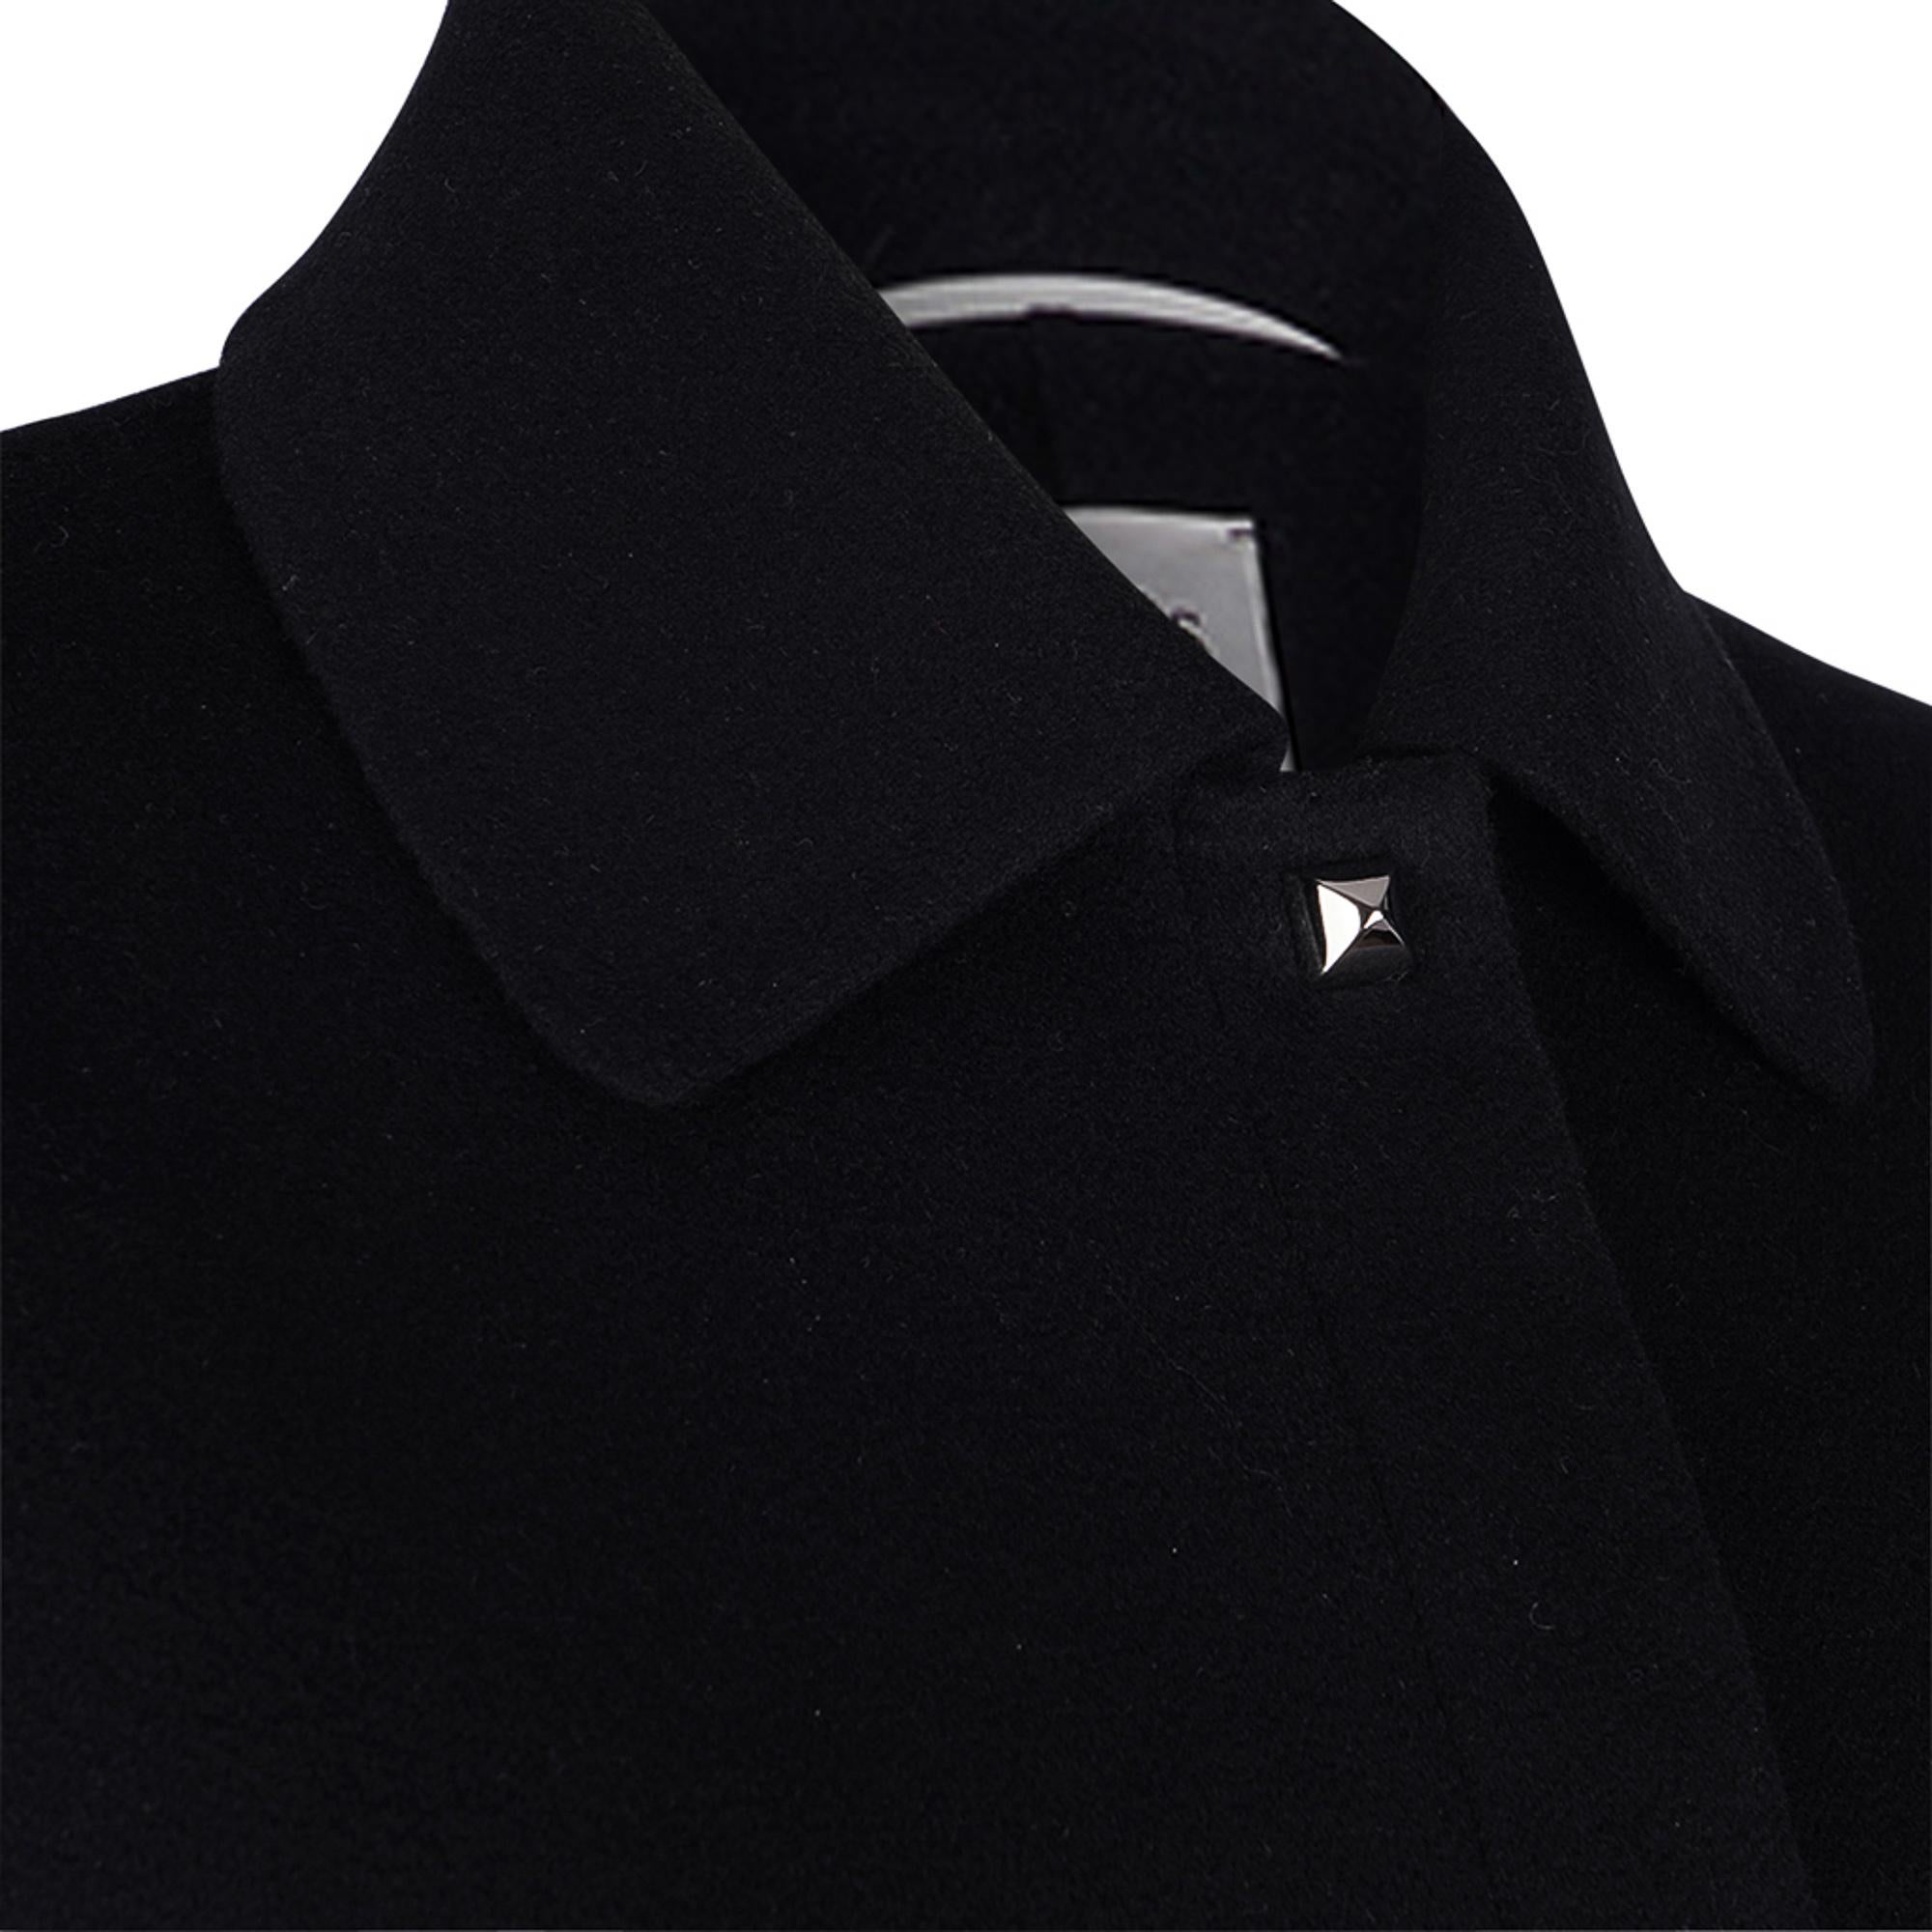 Hermes Black Cashmere Jacket Palladium Medor Snaps 40 / 6 For Sale 2